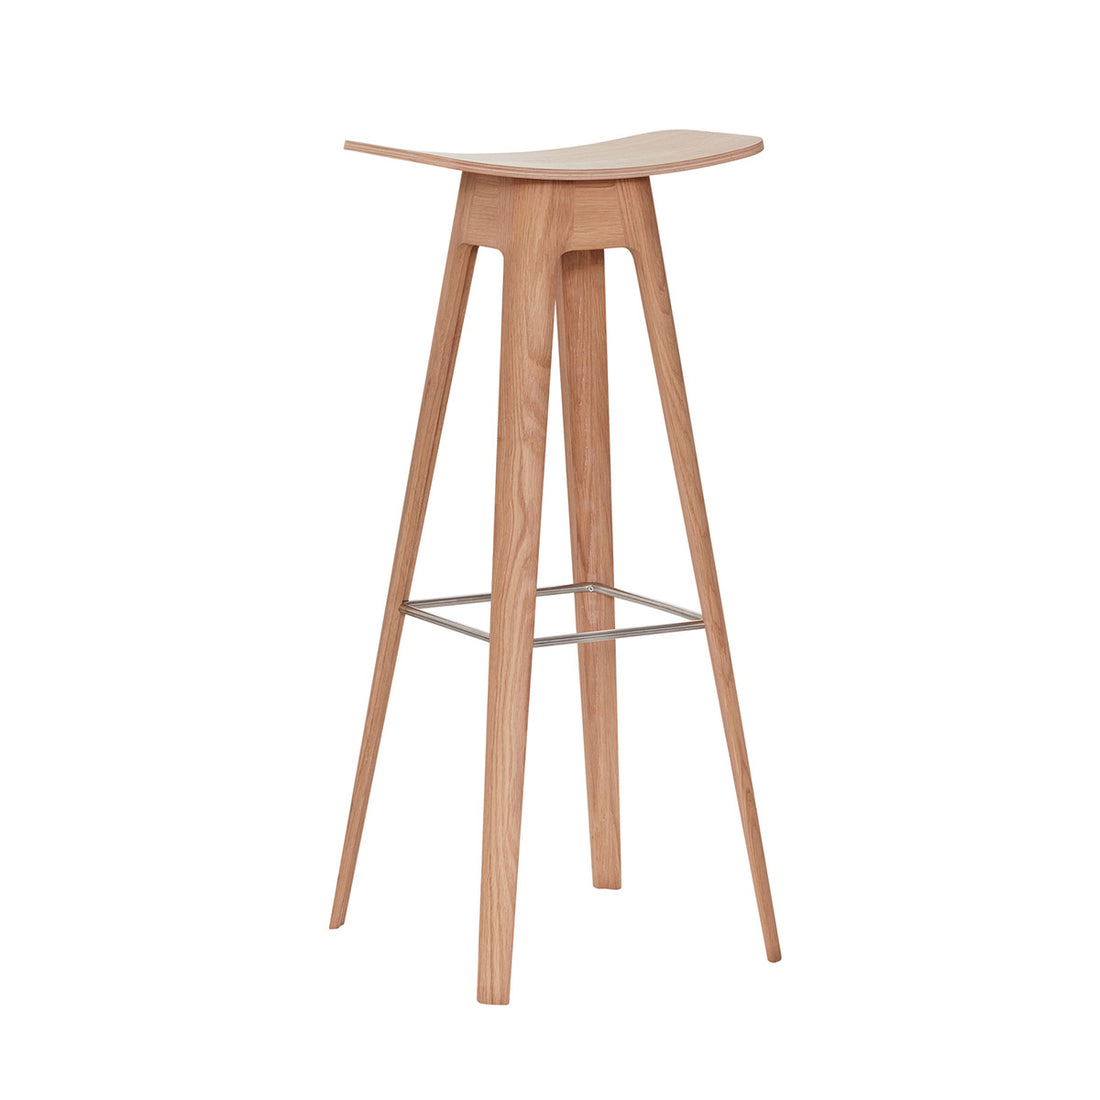 Andersen Furniture HC1 barstol - sæde i eg finér - understel i eg/hvidpigmenteret - H80 cm - DesignGaragen.dk.